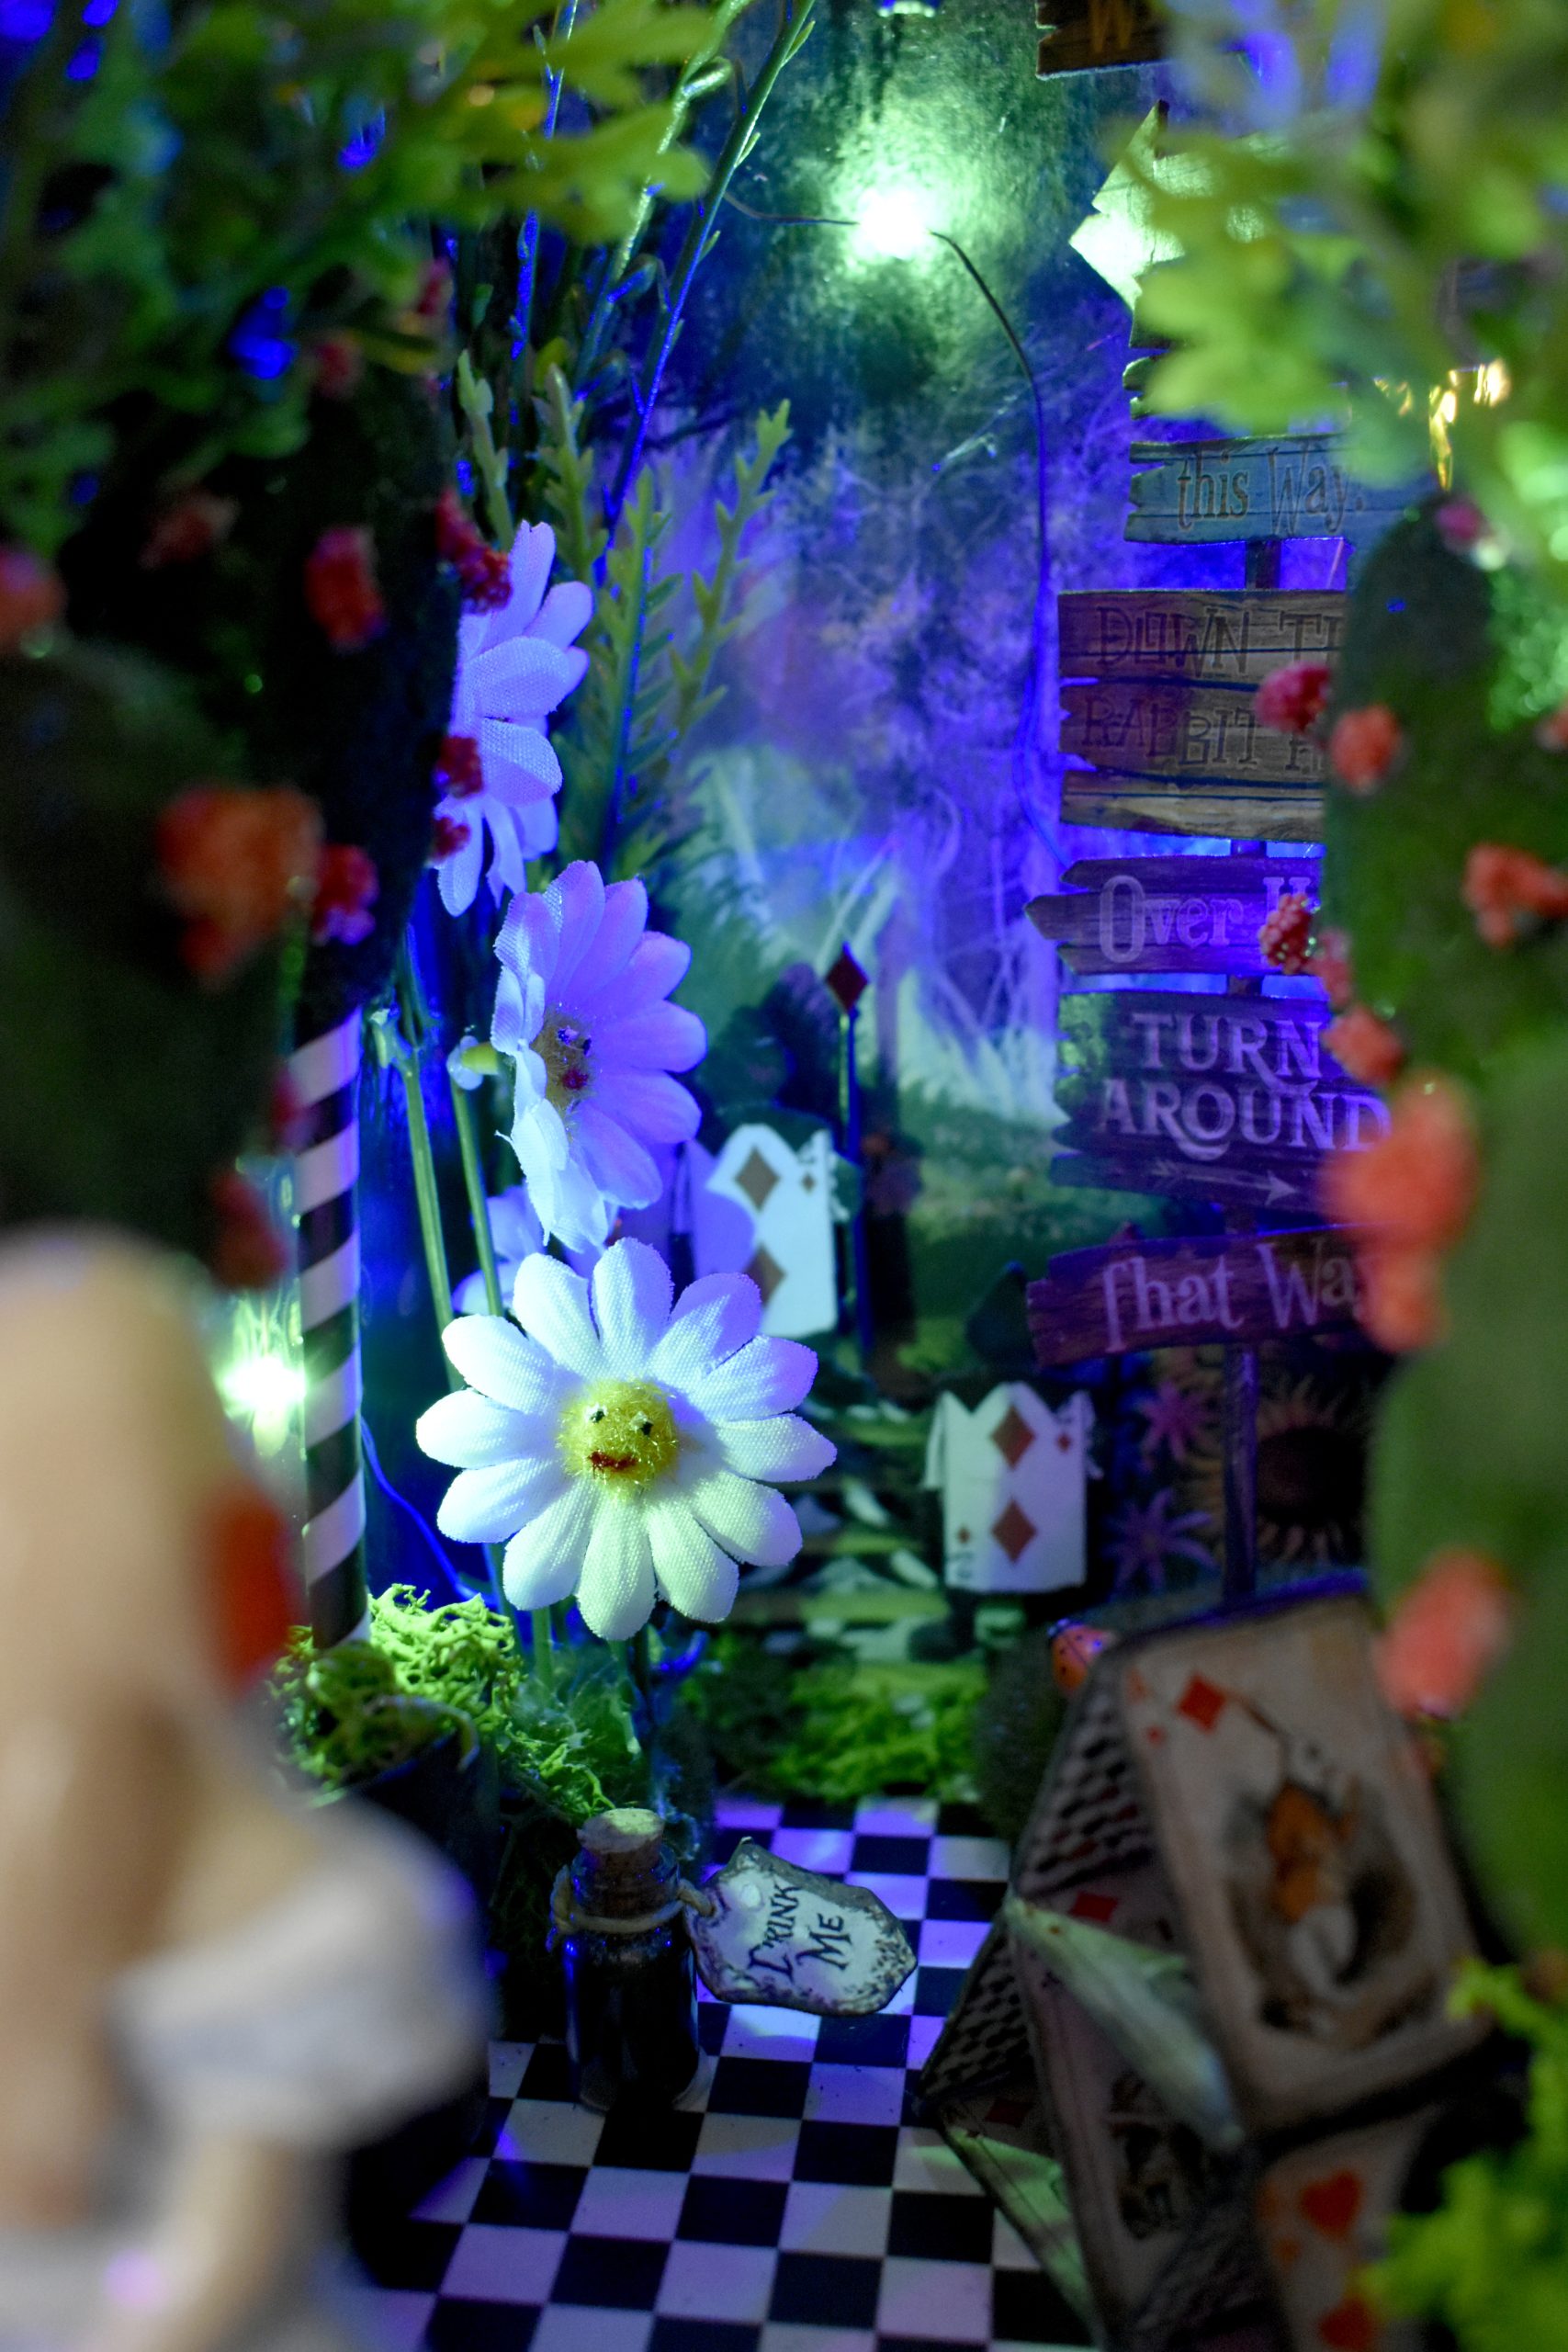 Book nook Alice in Wonderland, book insert Magic Forest